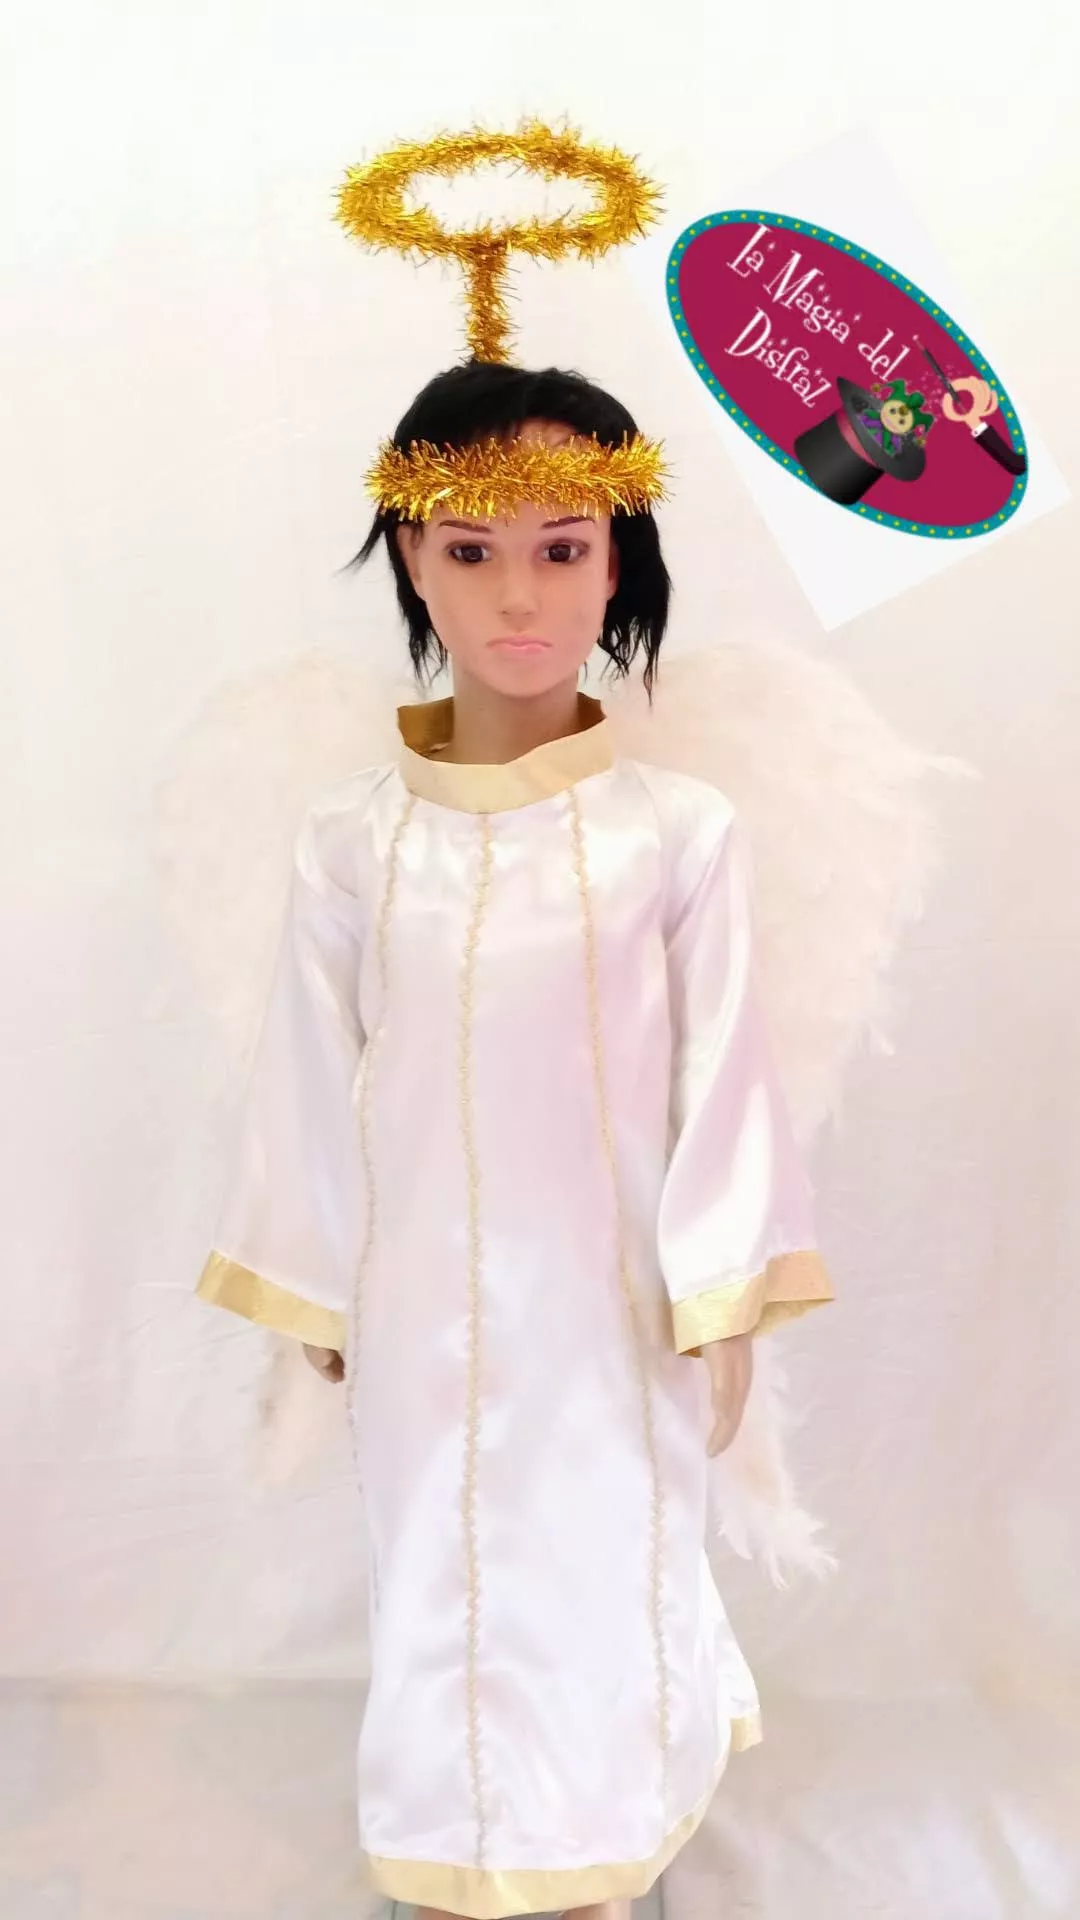 La magia del disfraz: angel-tunica-blanca-04-blanco